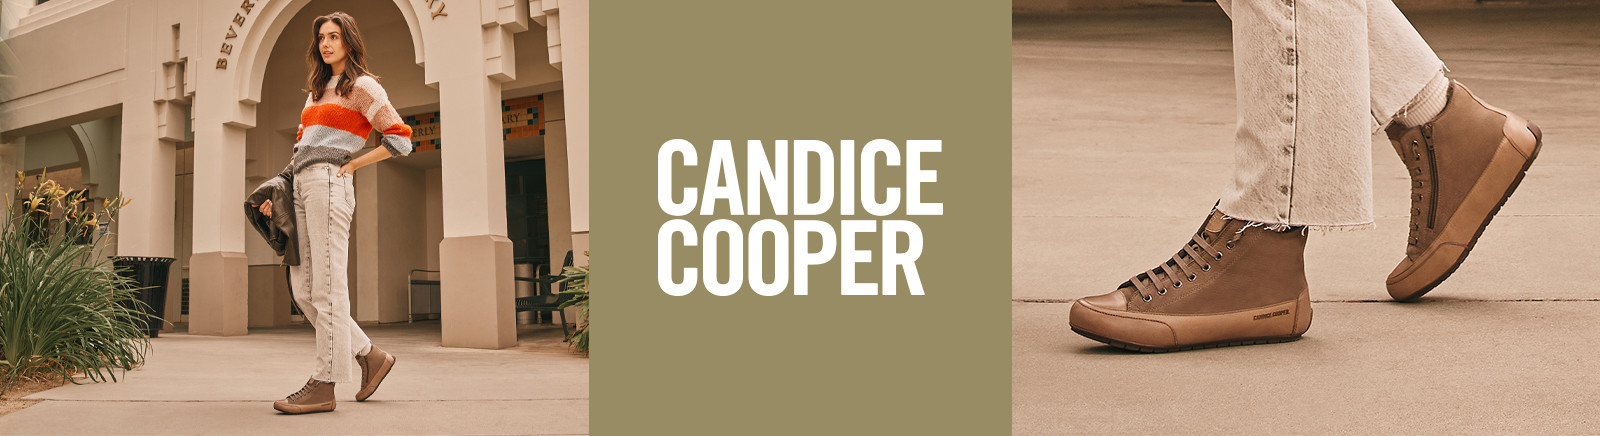 Prange: Candice Cooper Herren Boots online shoppen